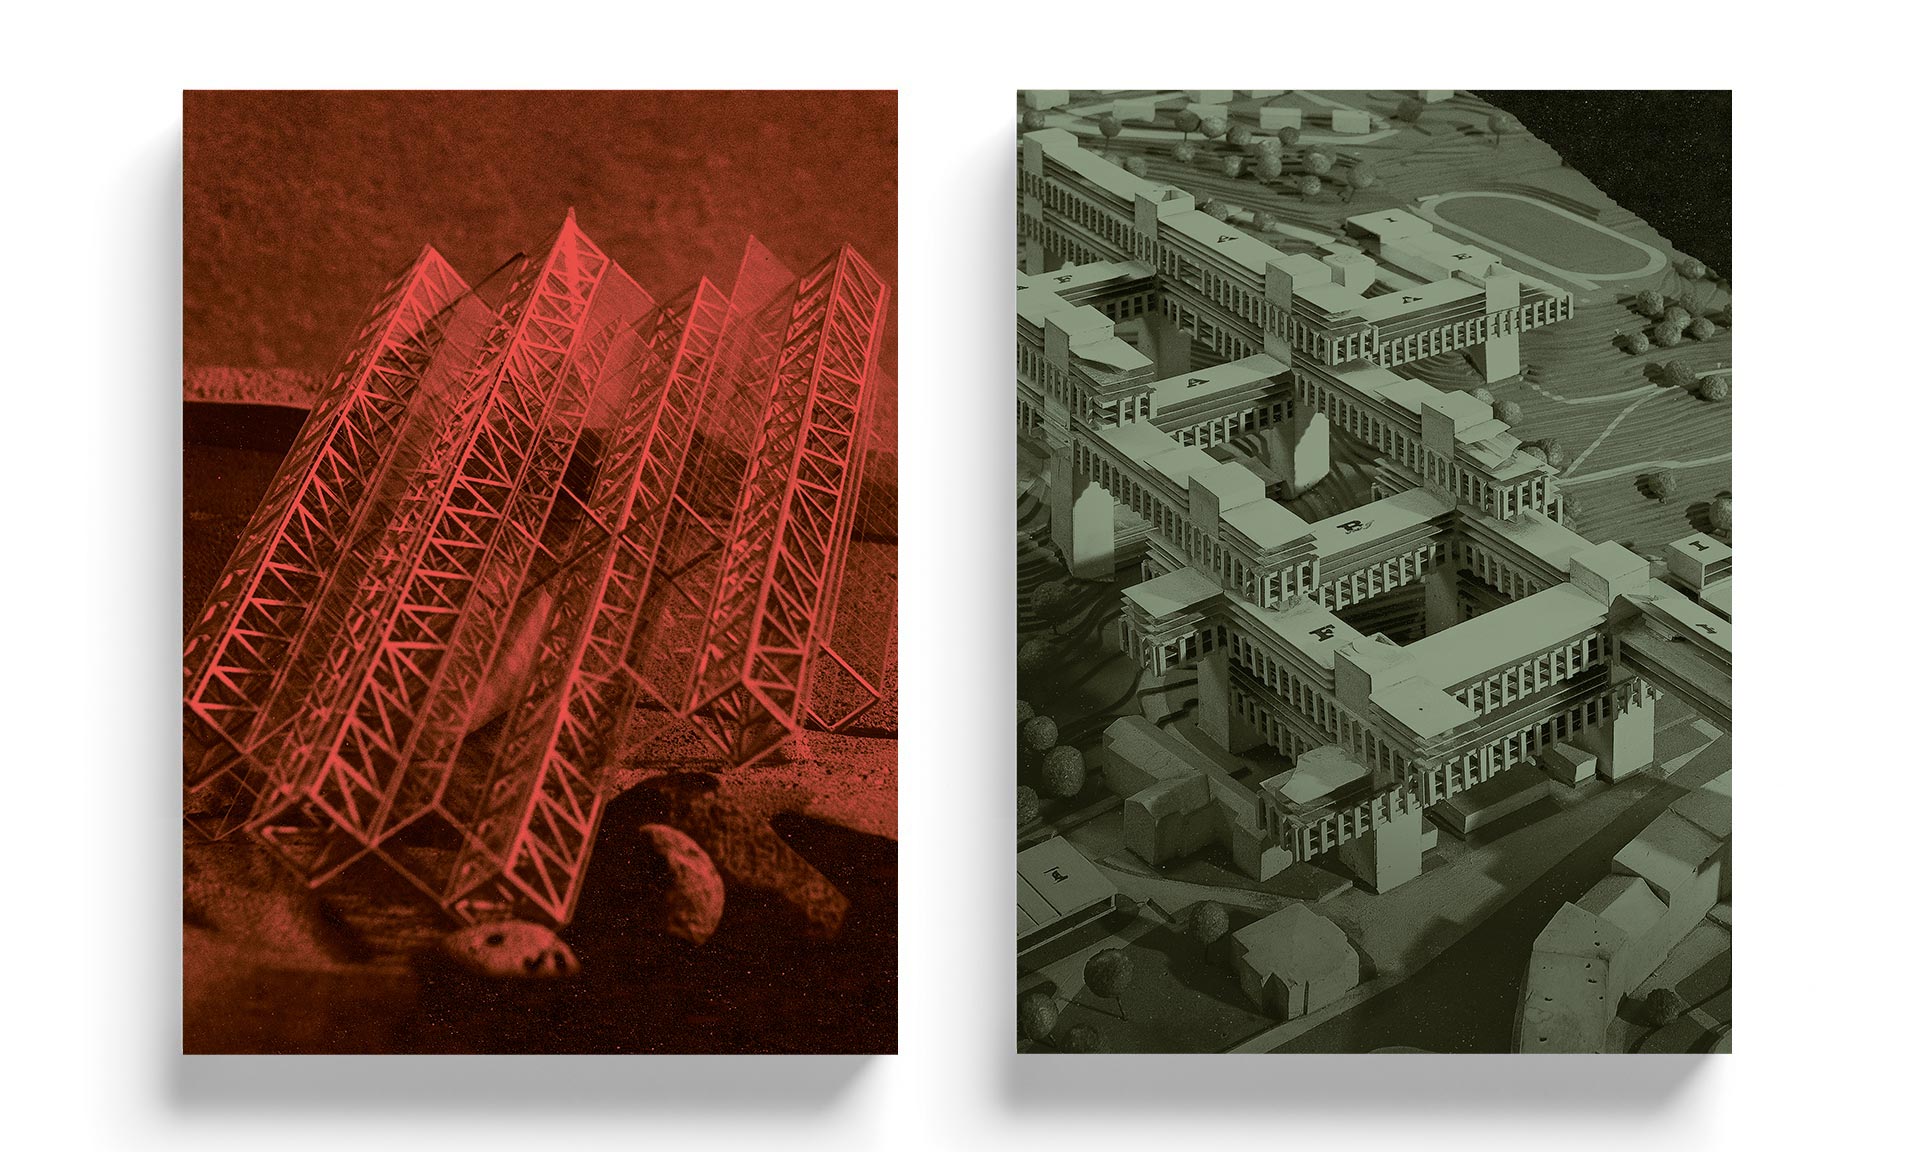 Vychází velká dvousvazková kniha Architektura 58–89 o české předrevoluční architektuře